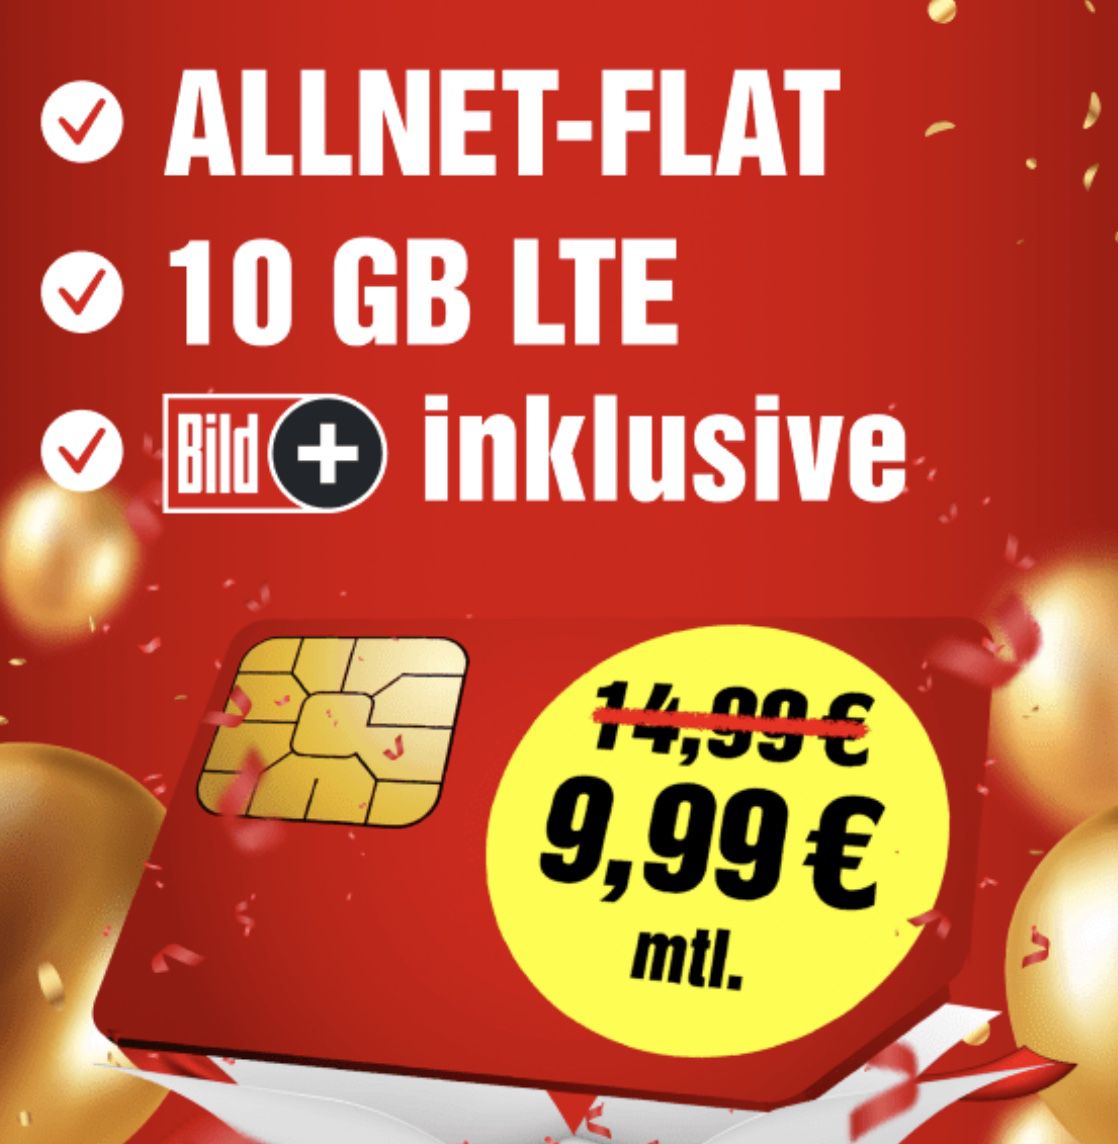 o2 Allnet-Flat mit 10GB LTE für 9,99€ mtl. inkl. BILDplus (Wert 5,99€ mtl.) &#8211; auch monatlich kündbar!